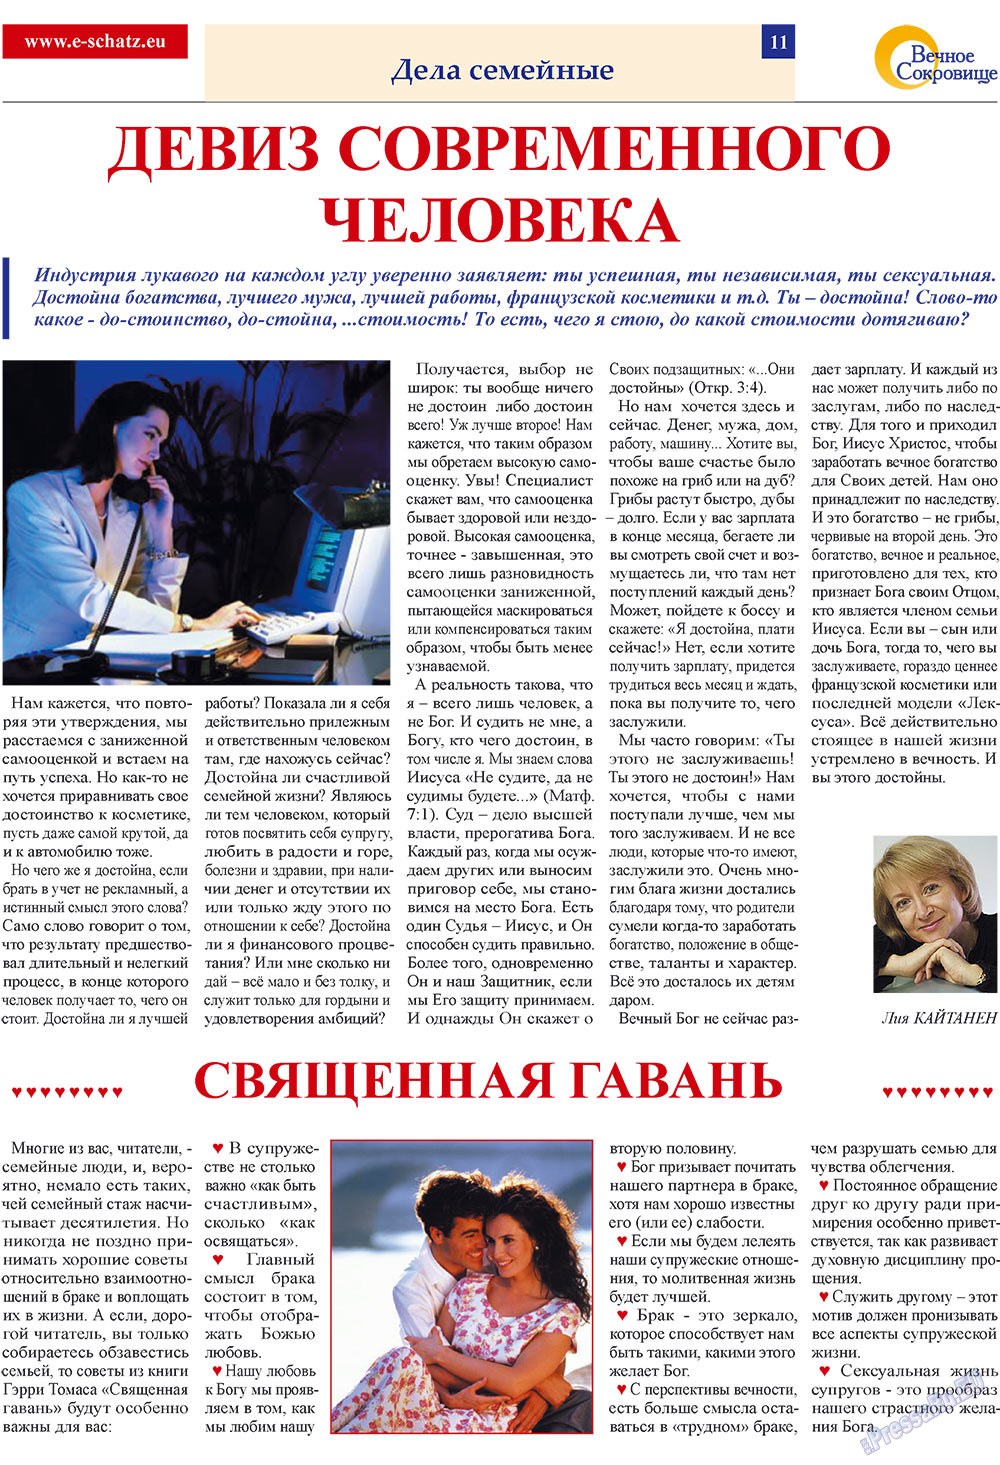 Вечное сокровище, газета. 2009 №1 стр.11